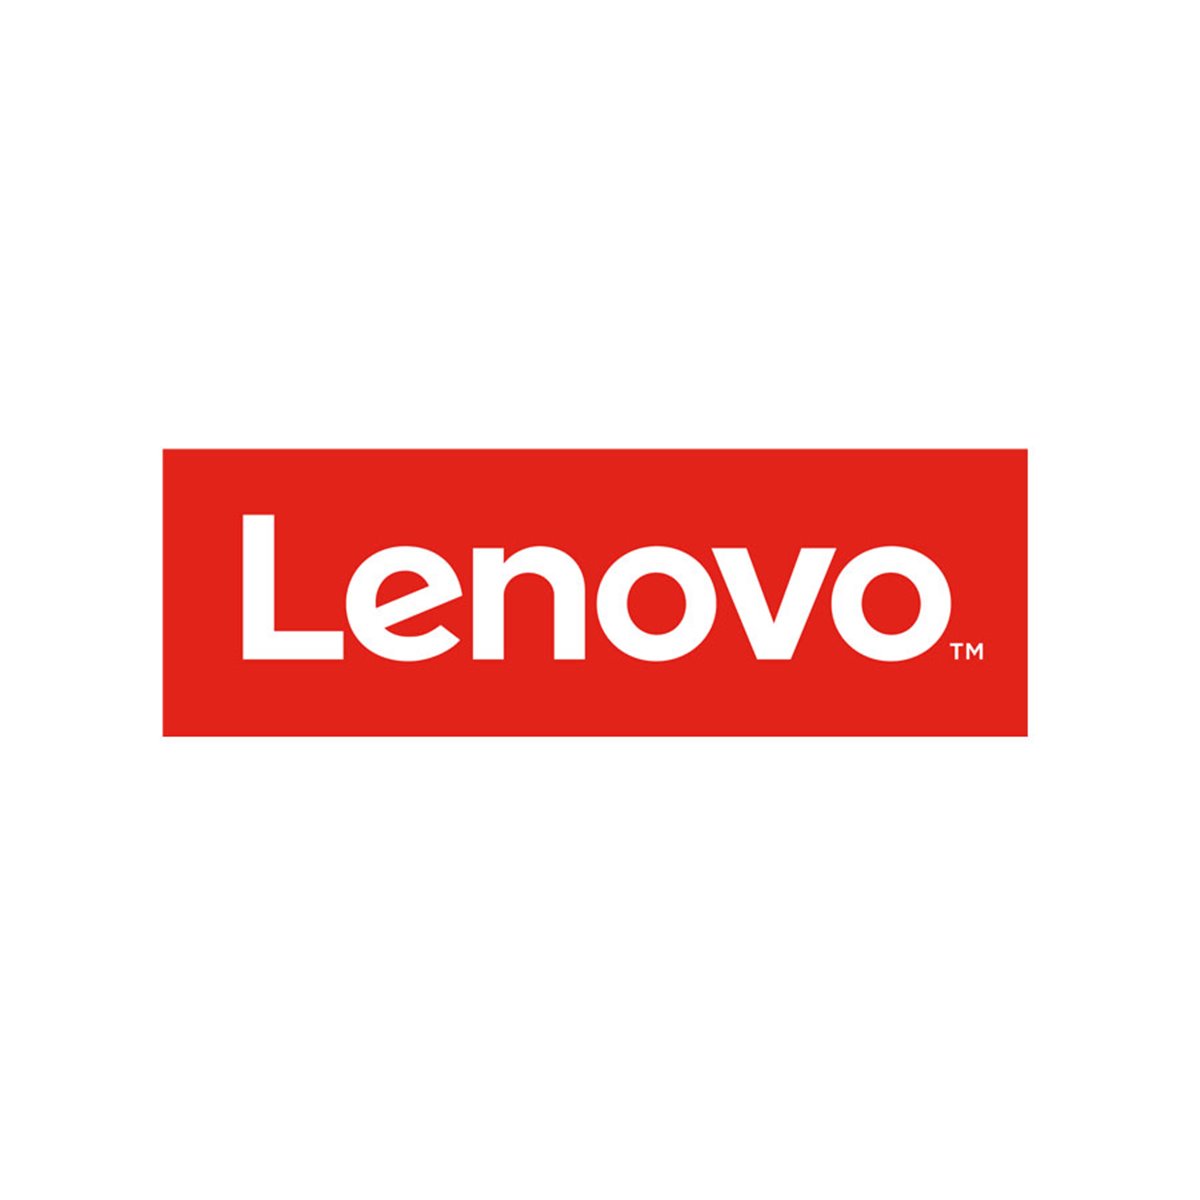 Lenovo Storwize Family for V5000 External Virtualizati on - Easy